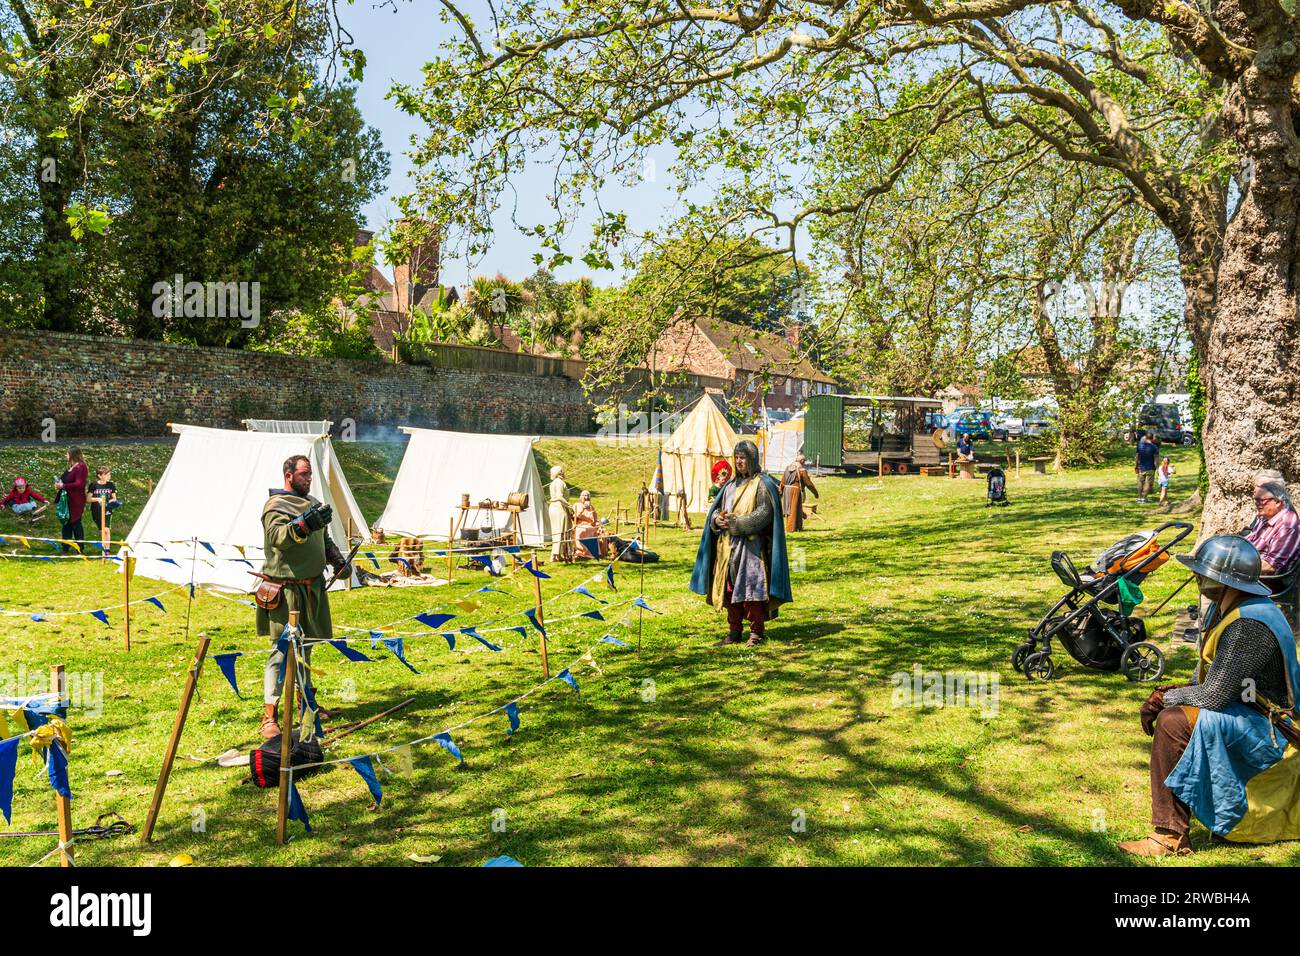 Mittelalterliches Lager für lebendige Geschichte am Flussufer Green in der Stadt Kent in Sandwich. Weiße und farbige Zelte, die unter Bäumen in der Sonne aufgestellt werden. Stockfoto